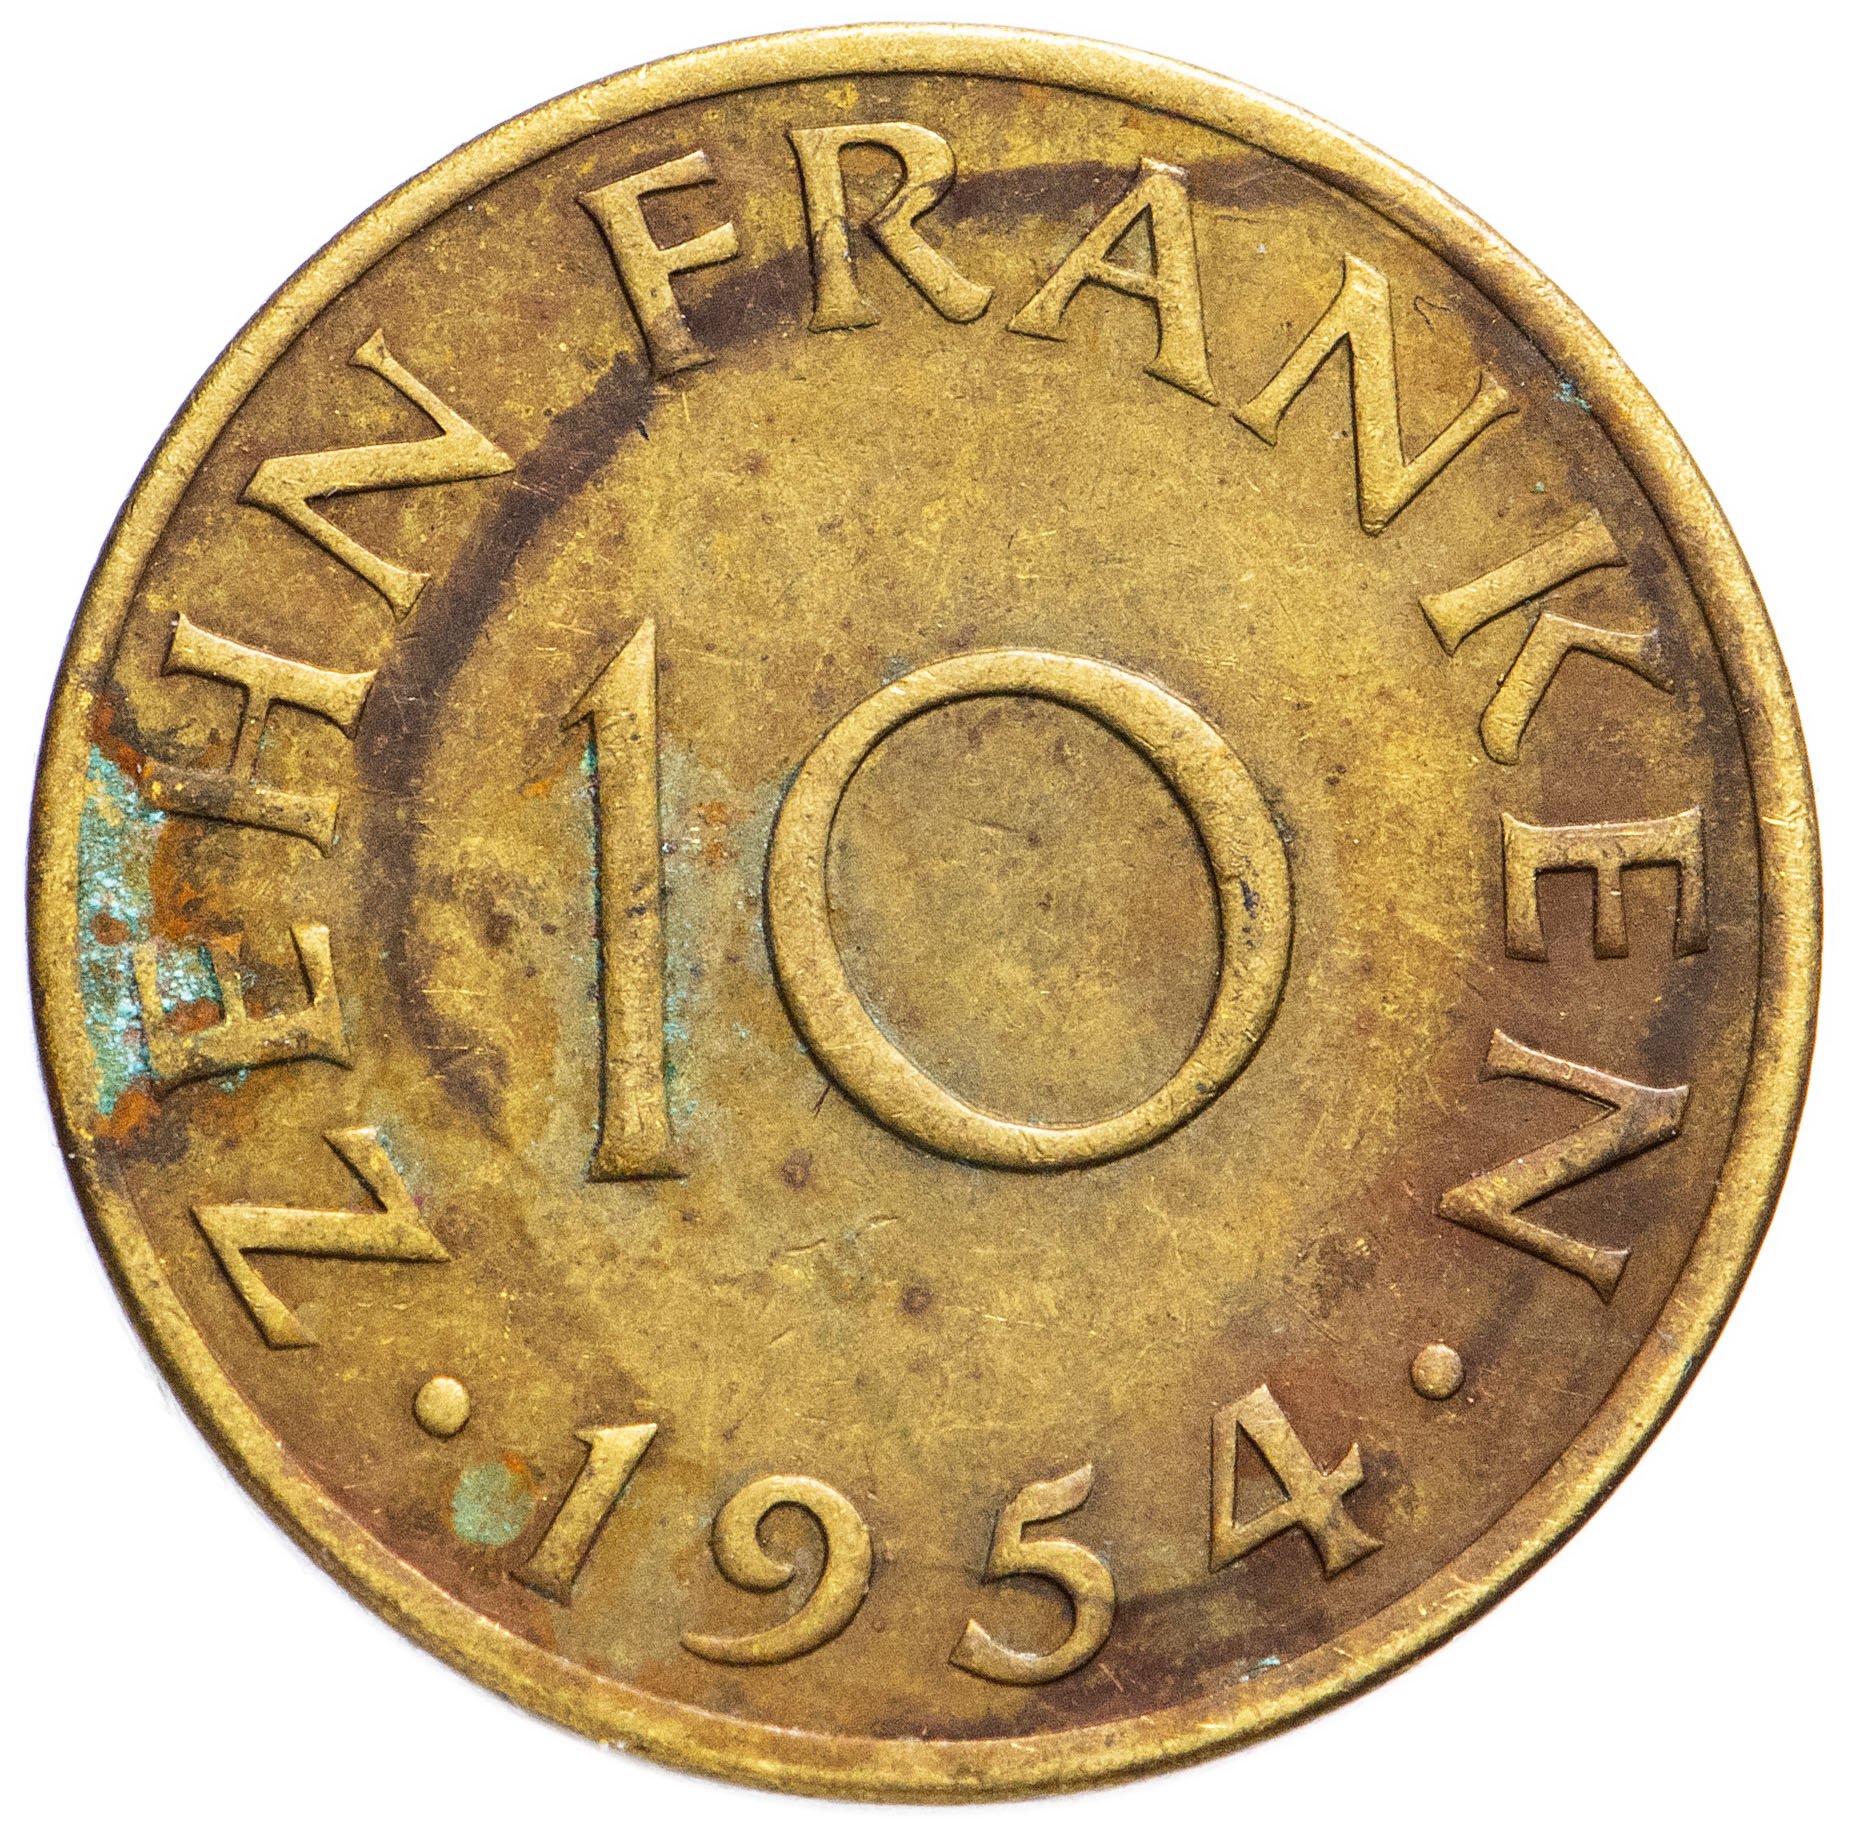 Монеты 1954 года стоимость. Американская монета 1954 года.